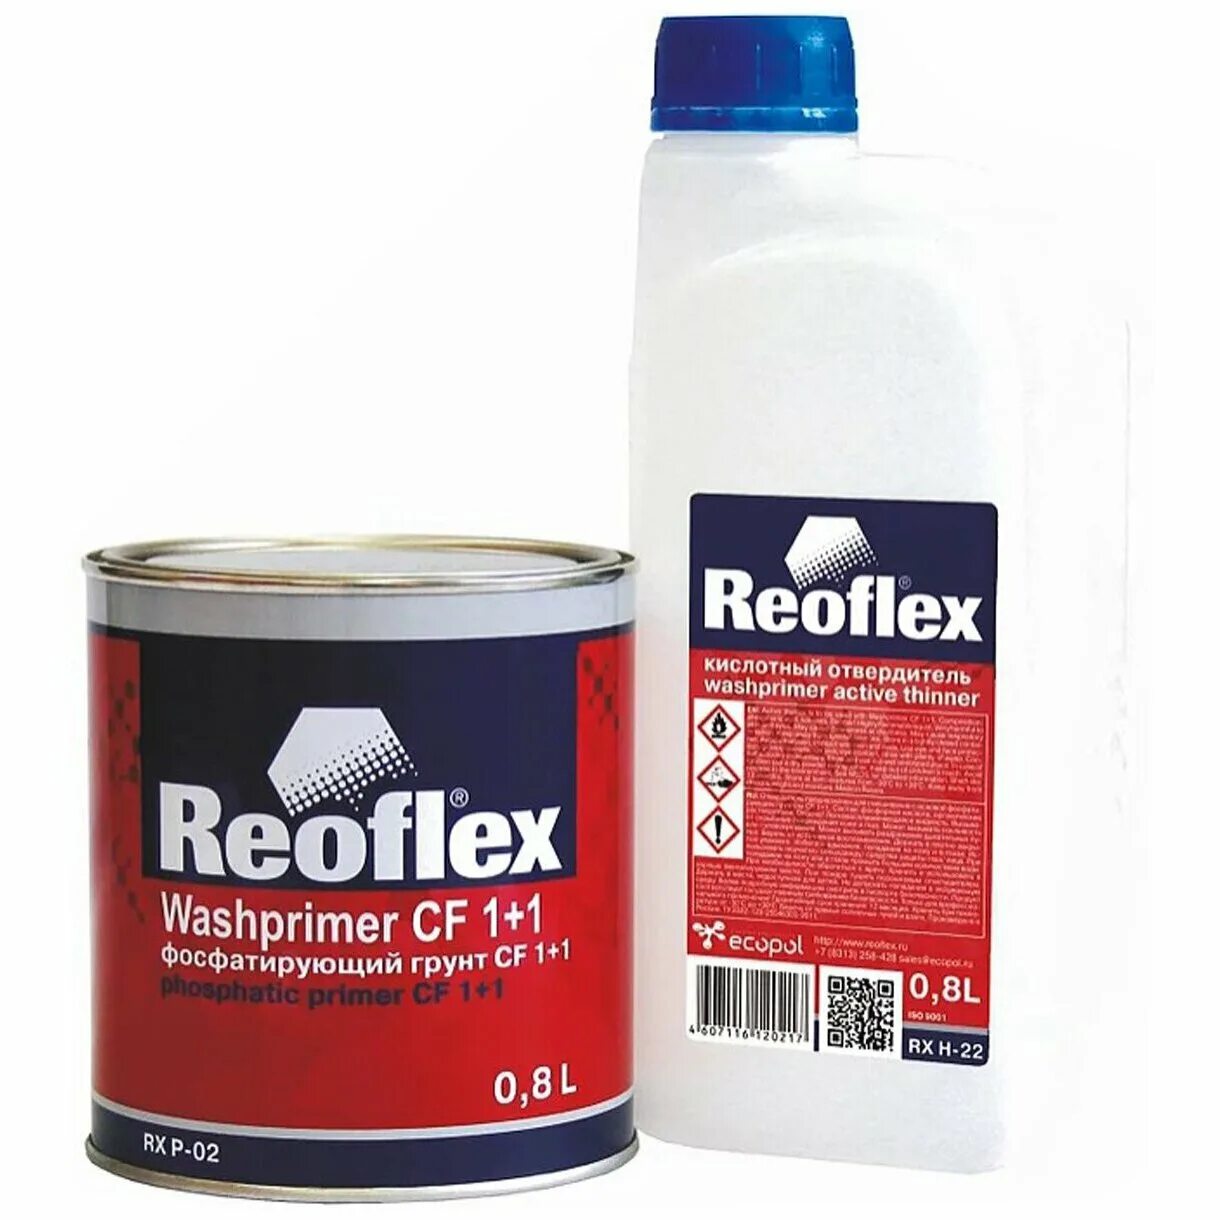 Какой хороший грунт для автомобиля. Reoflex грунт фосфатирующий RX P-02. Грунт фосфатирующий вл-02+отвердитель кислотный (0,8+0,67) Vika. Reoflex грунт 2к фосфатирующий (0,8л+0,8л). Reoflex Washprimer CF 1+1.